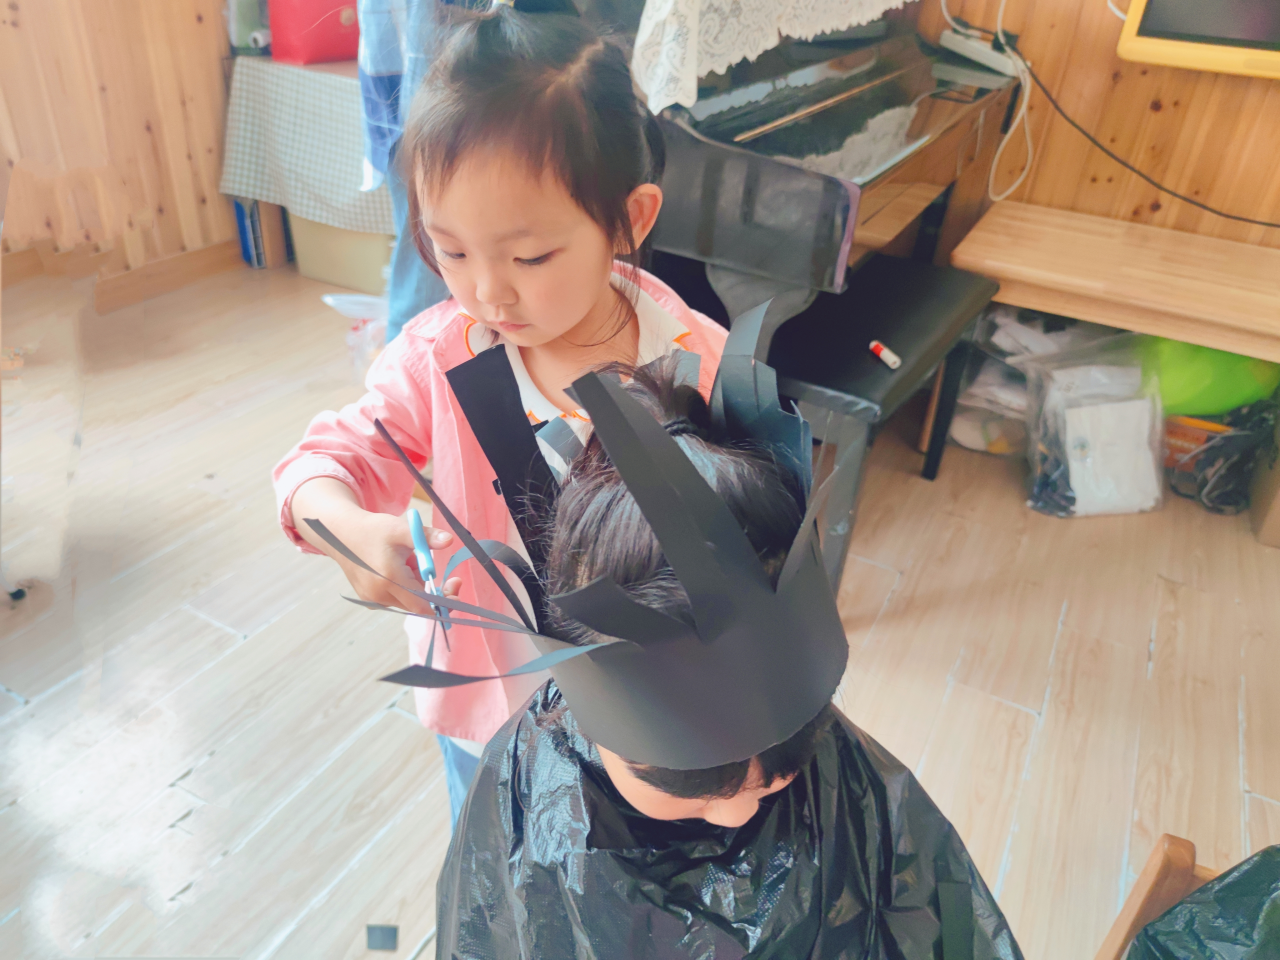 理发店的理发师给漂亮的金发男孩做发型图片下载 - 觅知网